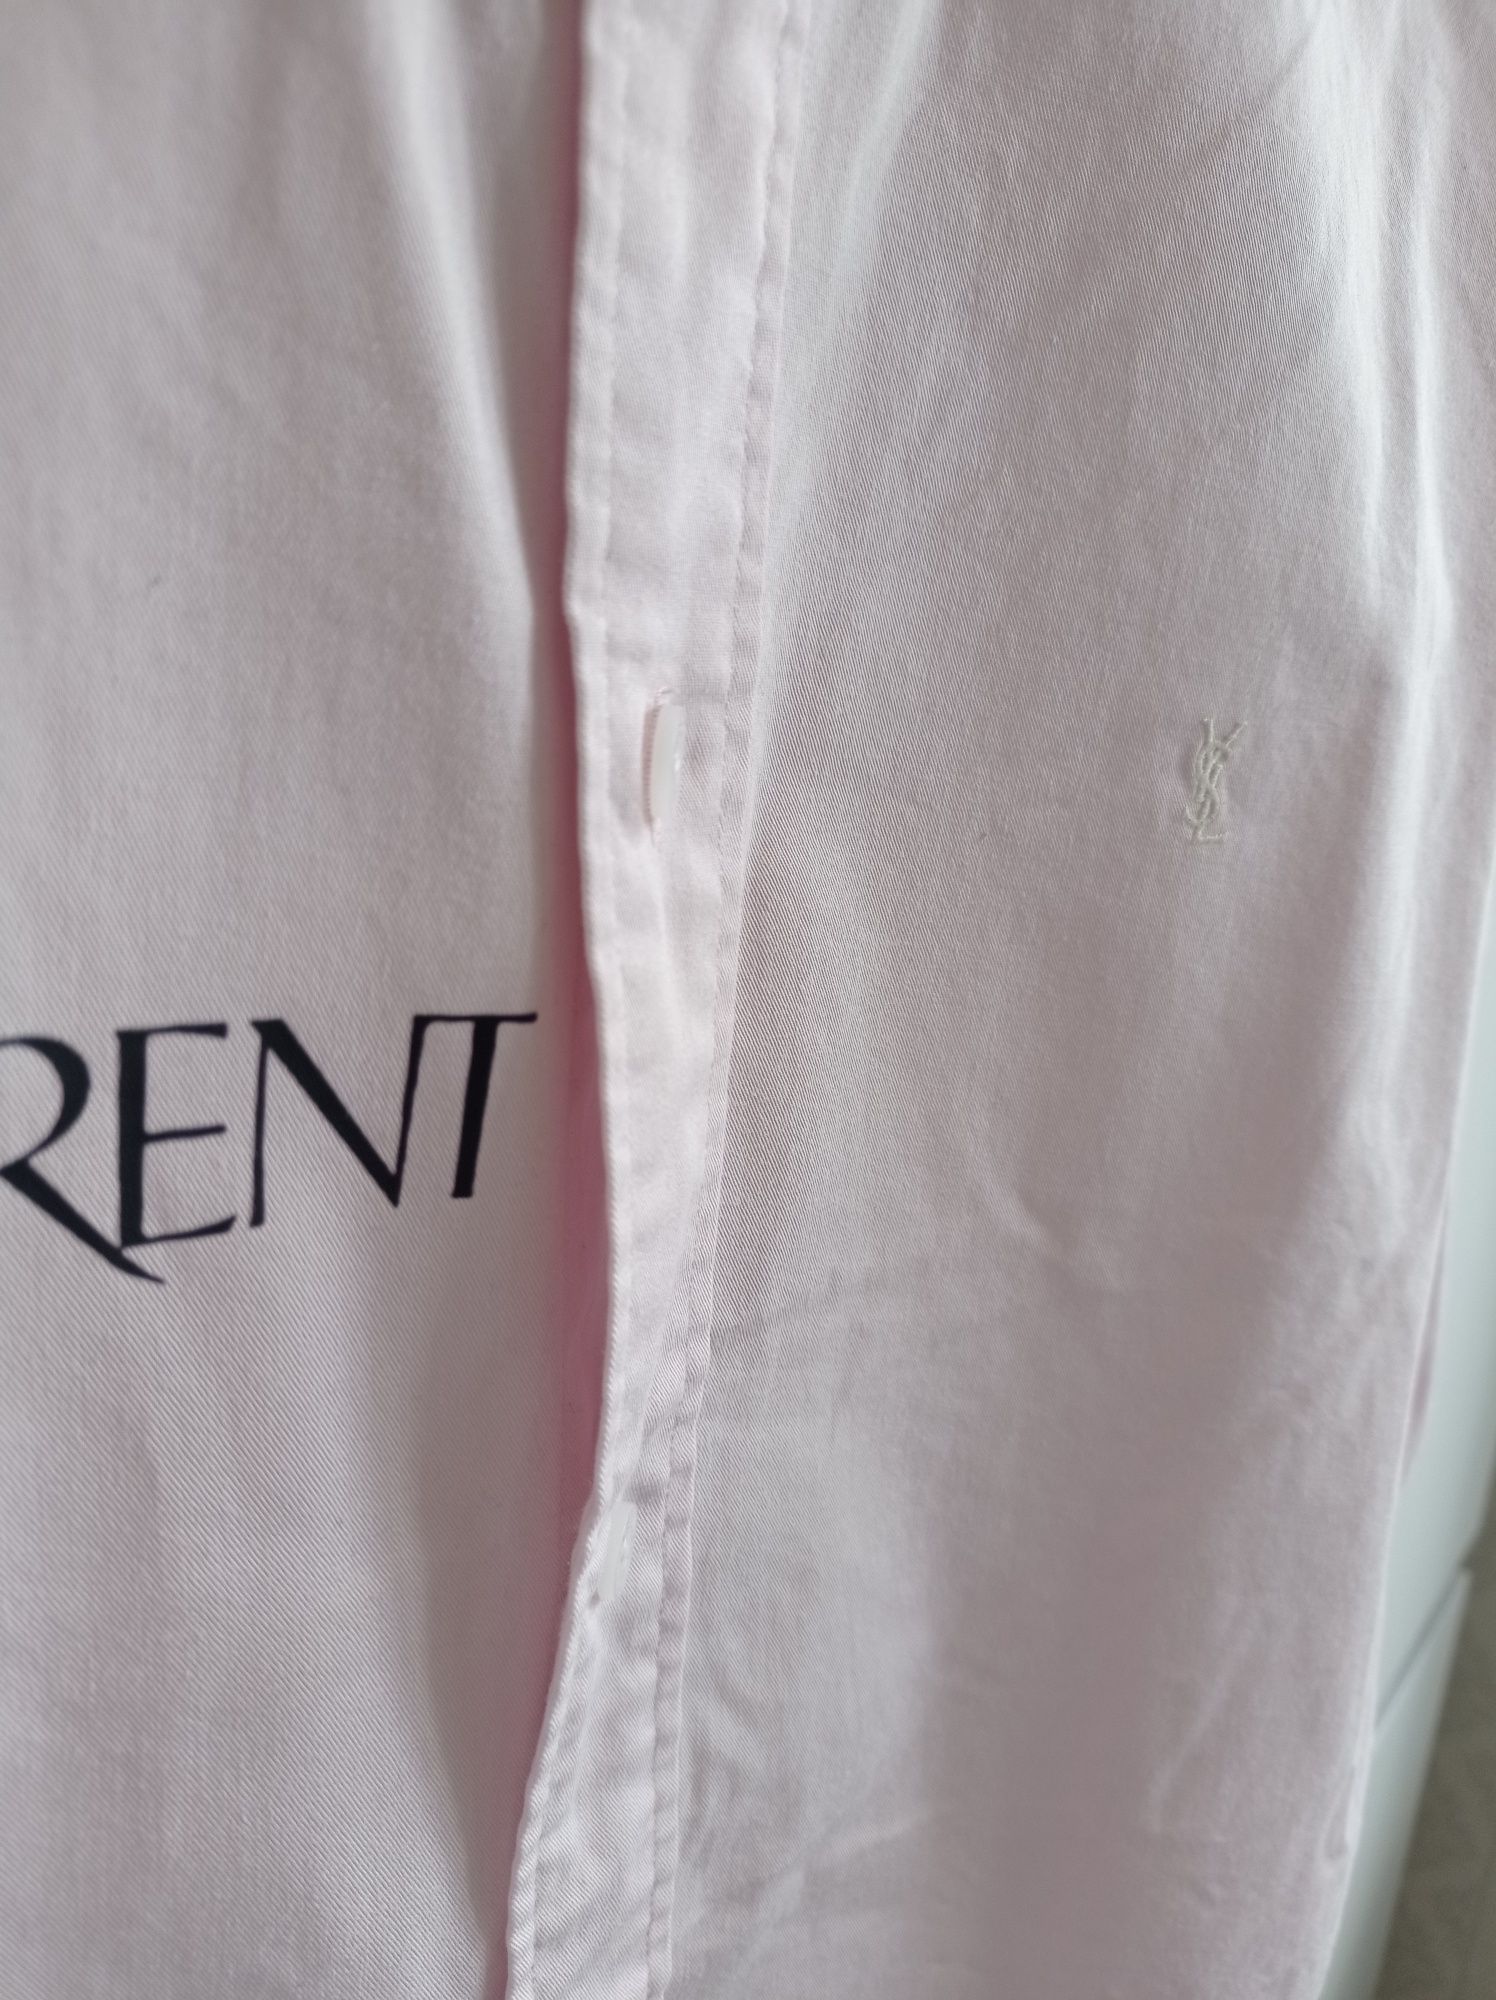 Рожева YSL, Saint Laurent рубашка x Hermes